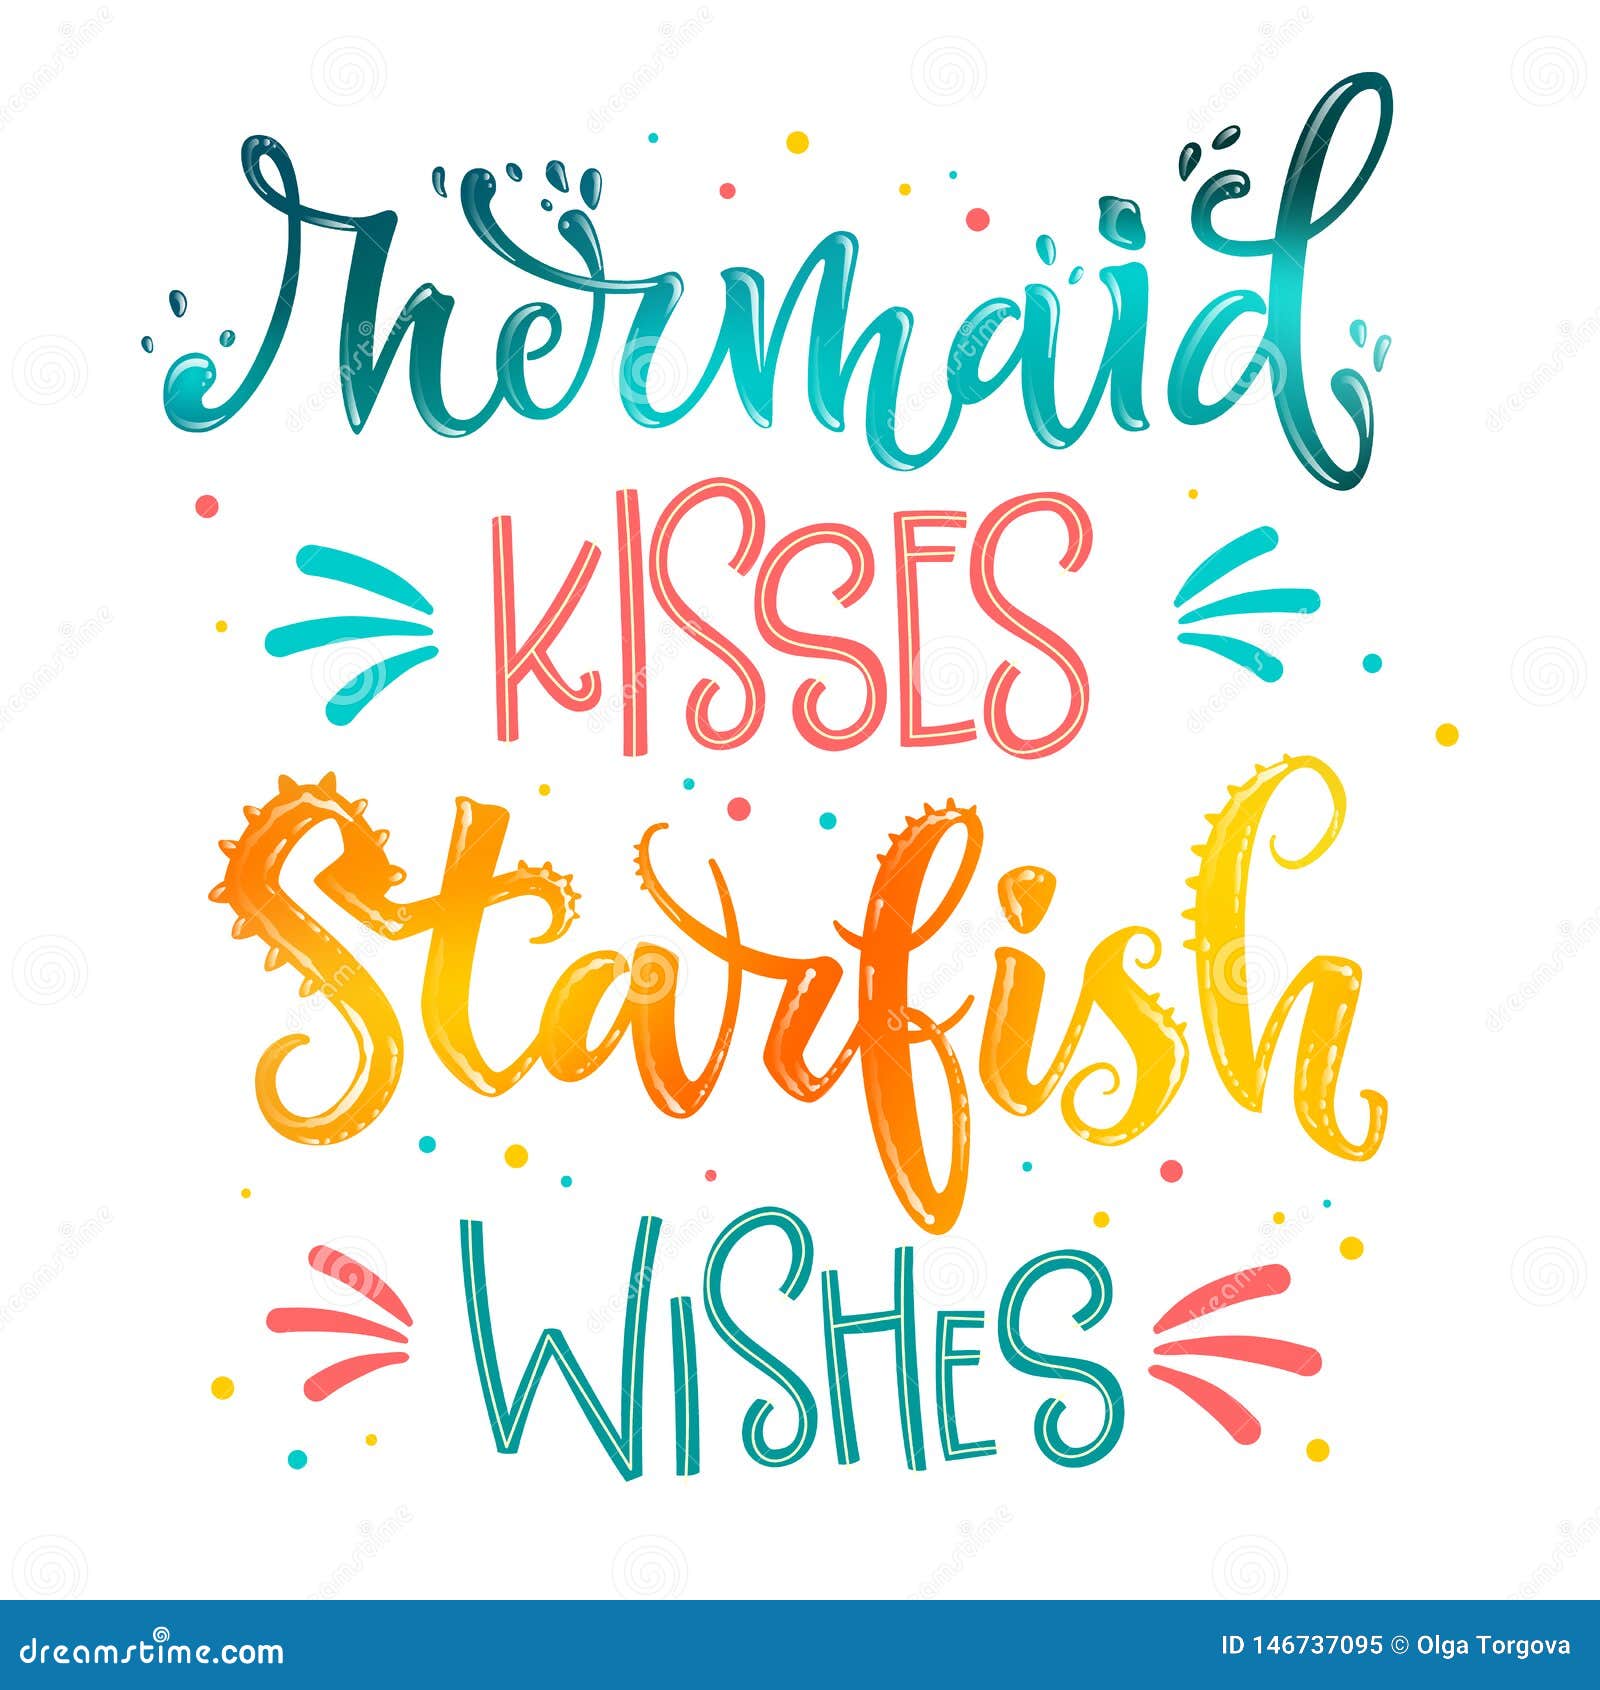 mermaid-kissies-starfish-wishes-svg-file